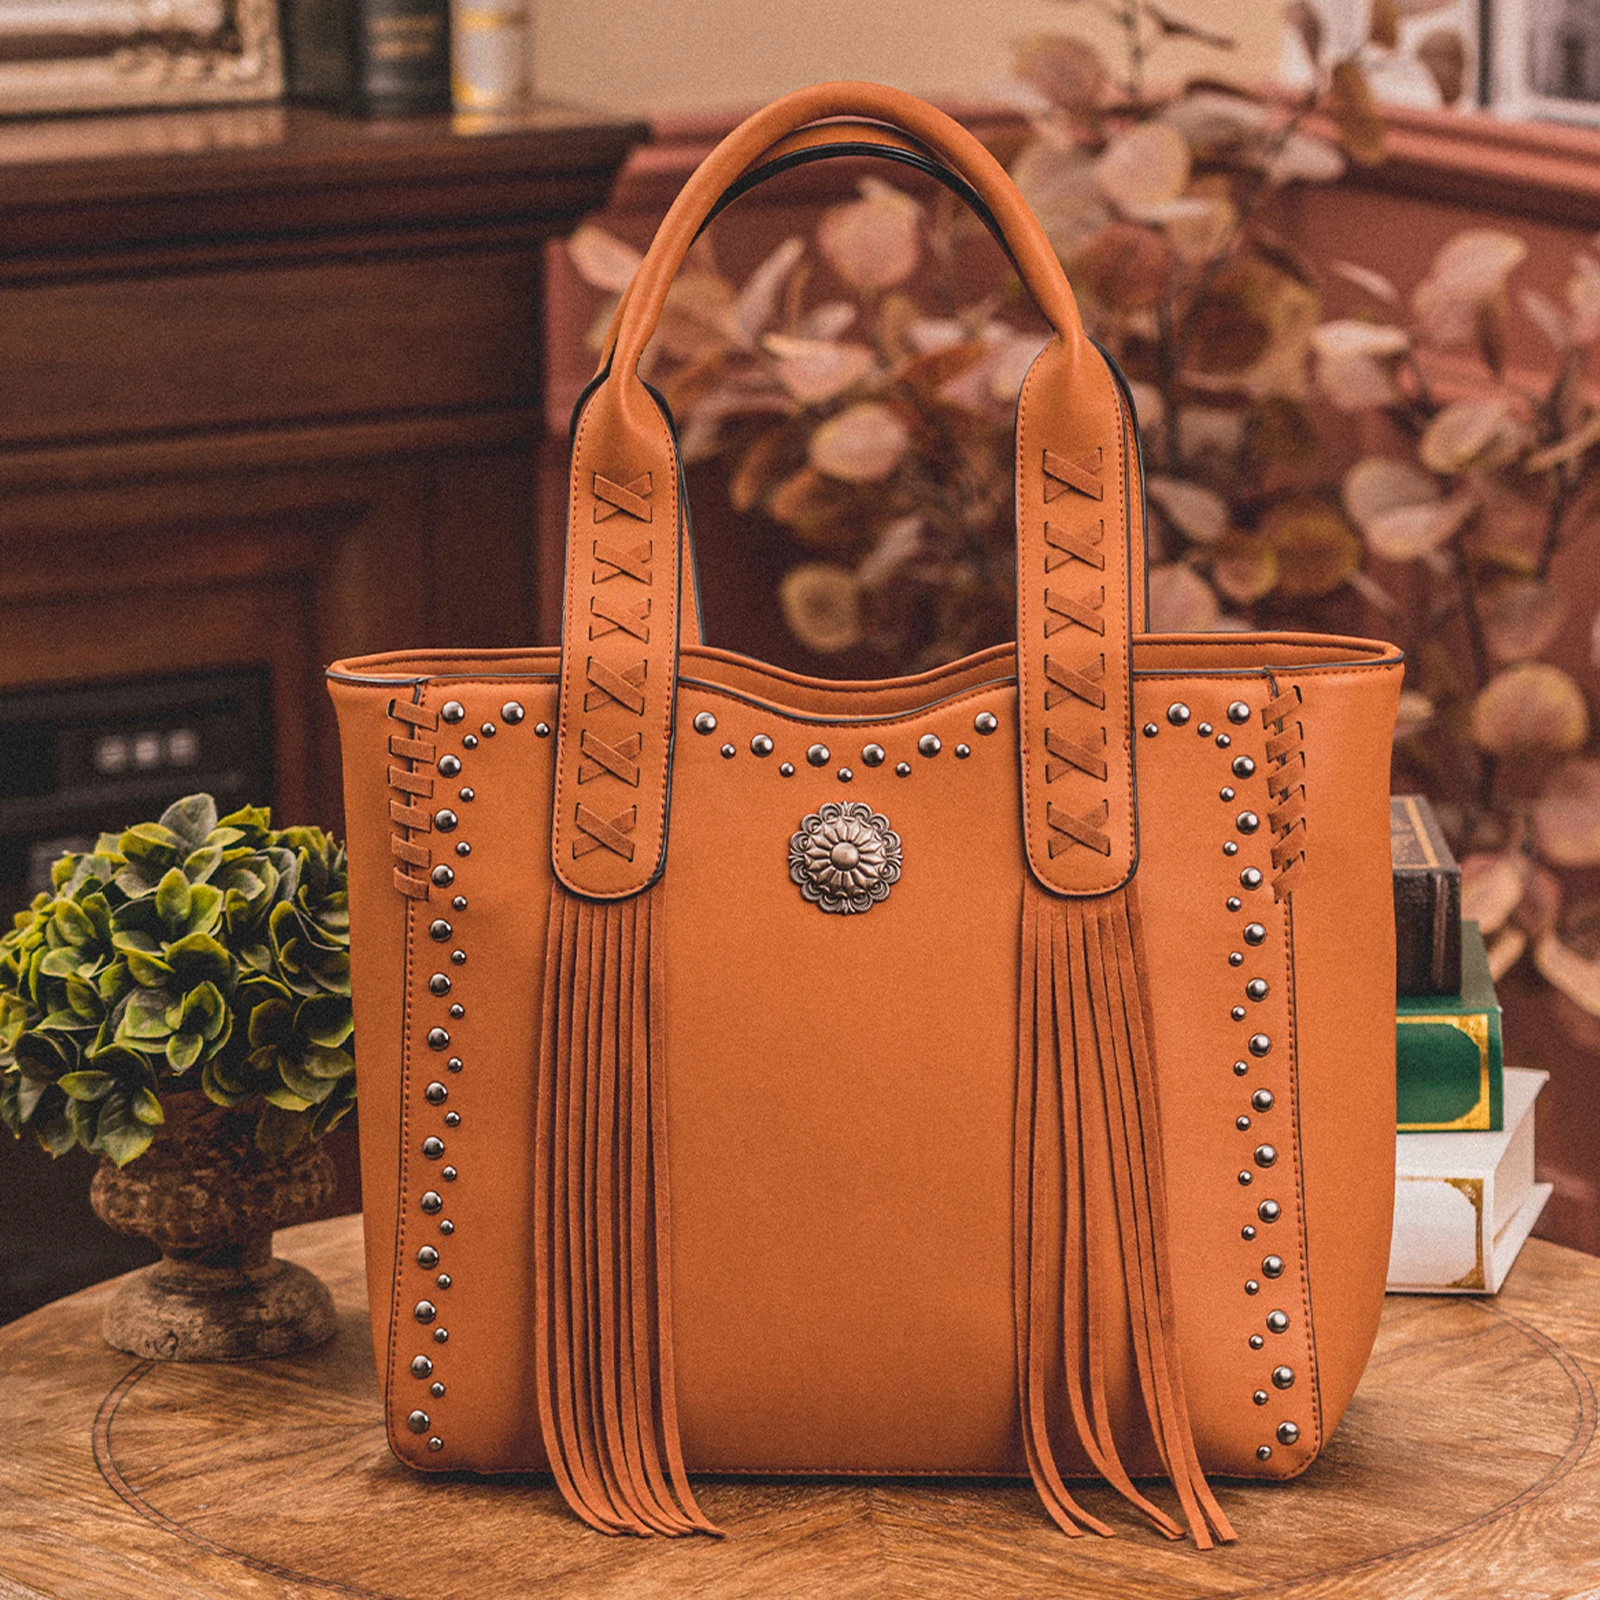 

Celela Luxury Designer Handbag PU Leaher Concealed Carry Fringe Rivet Tote High Capacity Shoulder Bag Purse